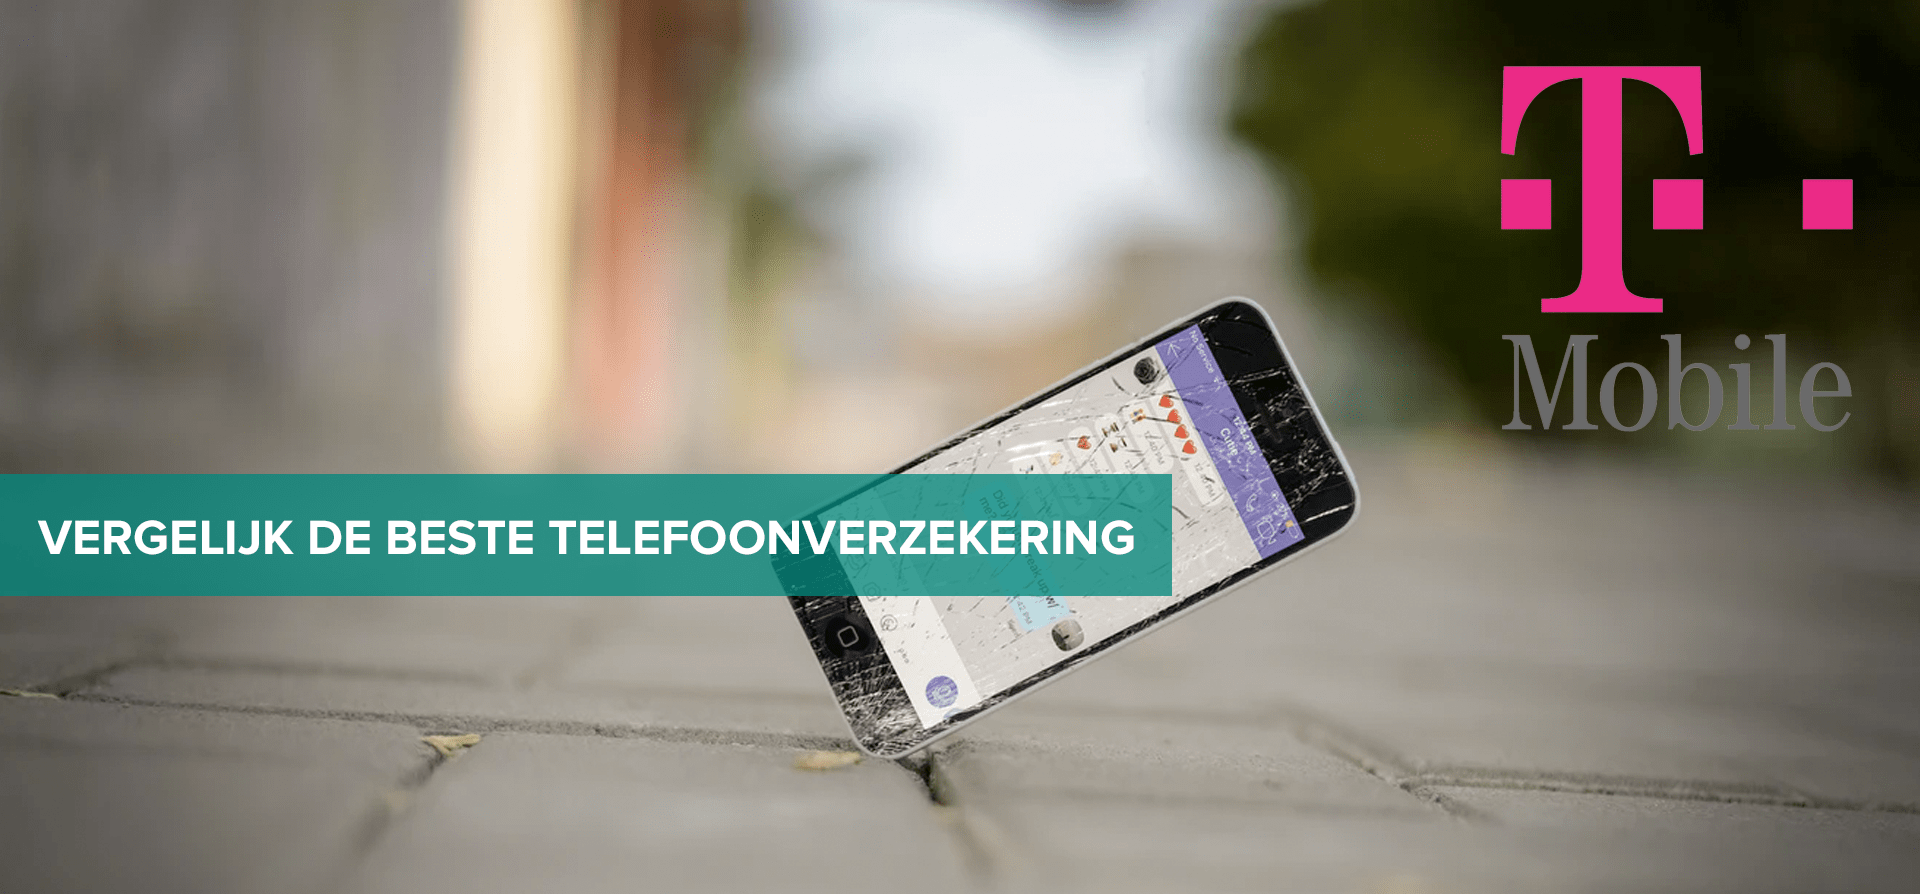 man Dijk Justitie T-mobile telefoonverzekering afsluiten in 2021? - Telefoonverzekering  vergelijken